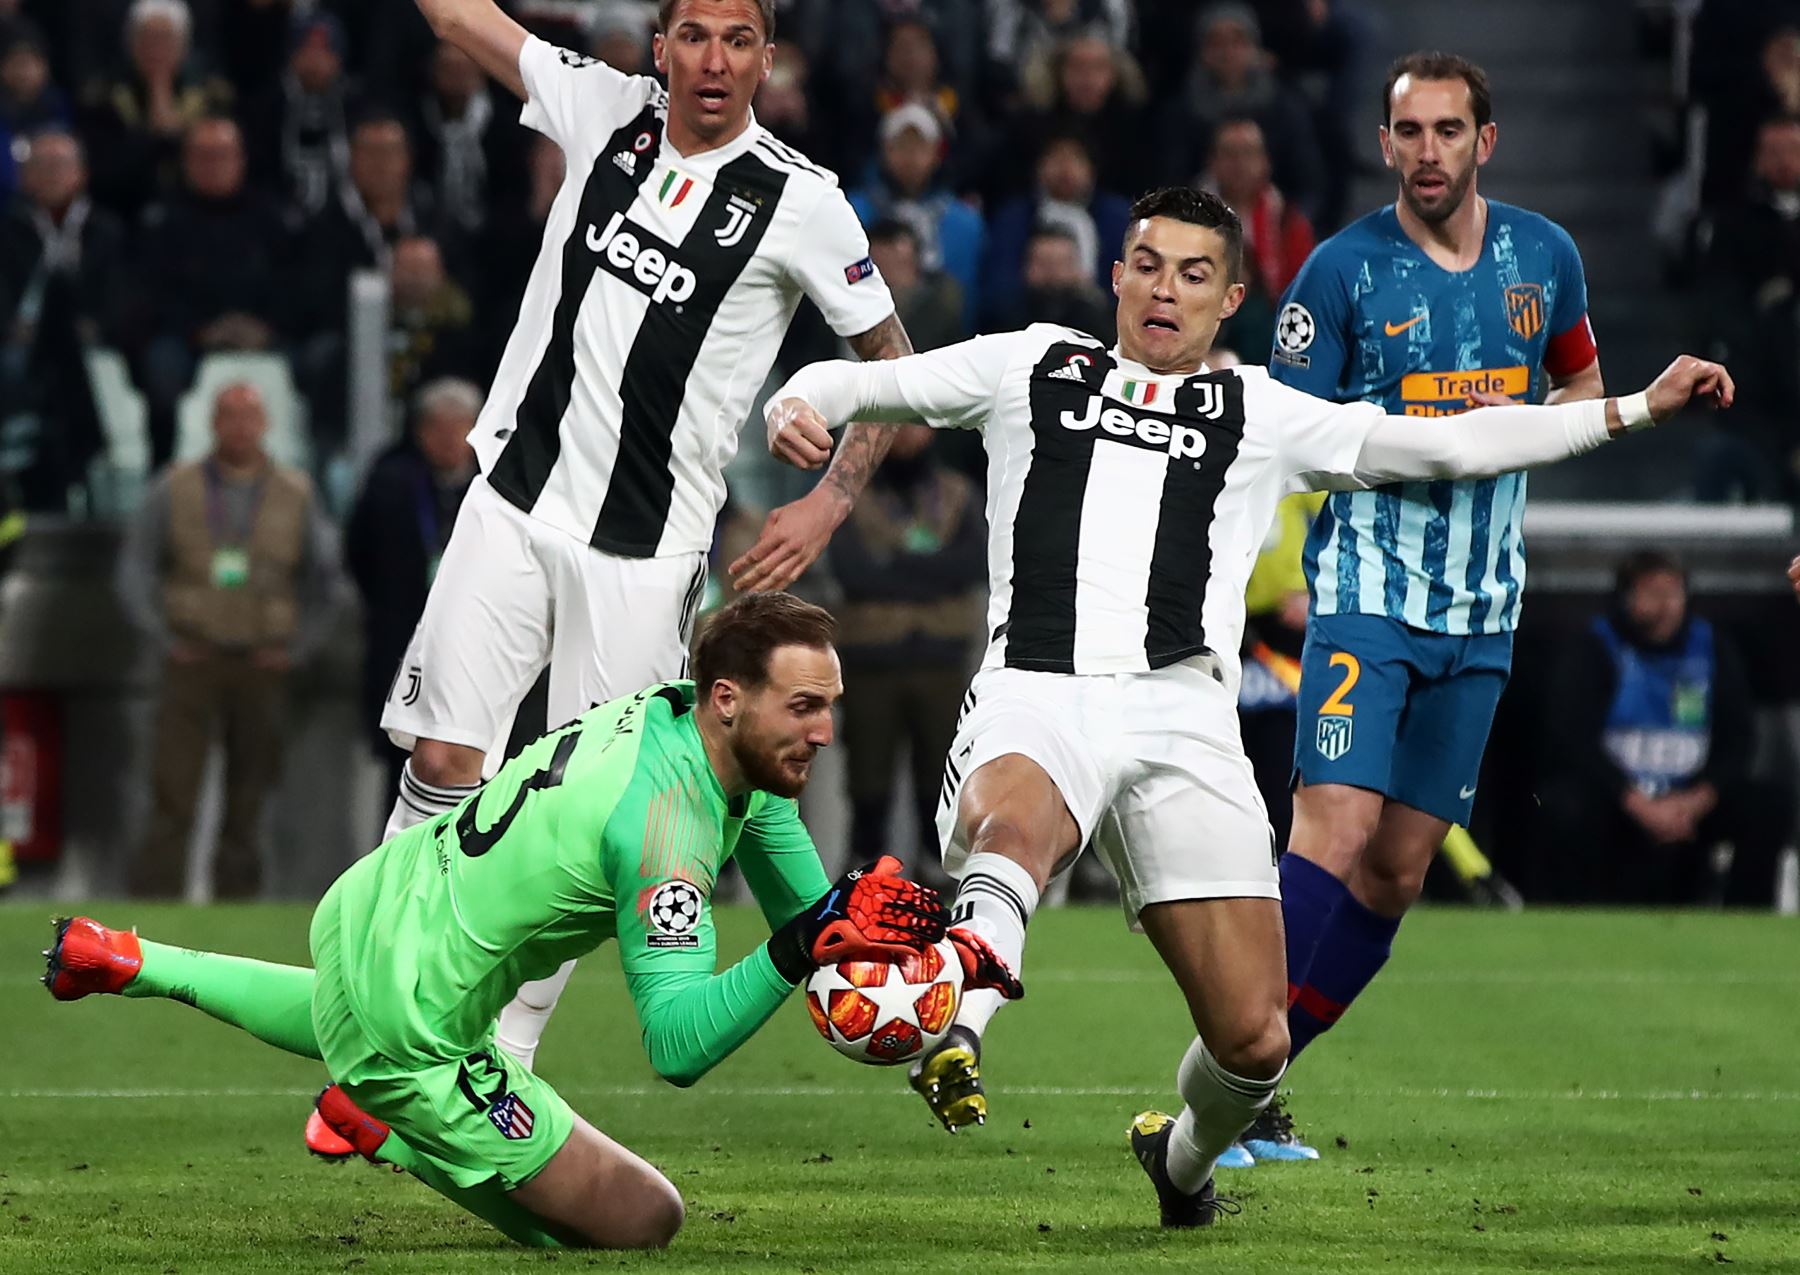 El delantero de la Juventus, Cristiano Ronaldo choca con el defensa colombiano del Atlético de Madrid, Santiago Arias durante la ronda de la UEFA Champions League : Foto: AFP